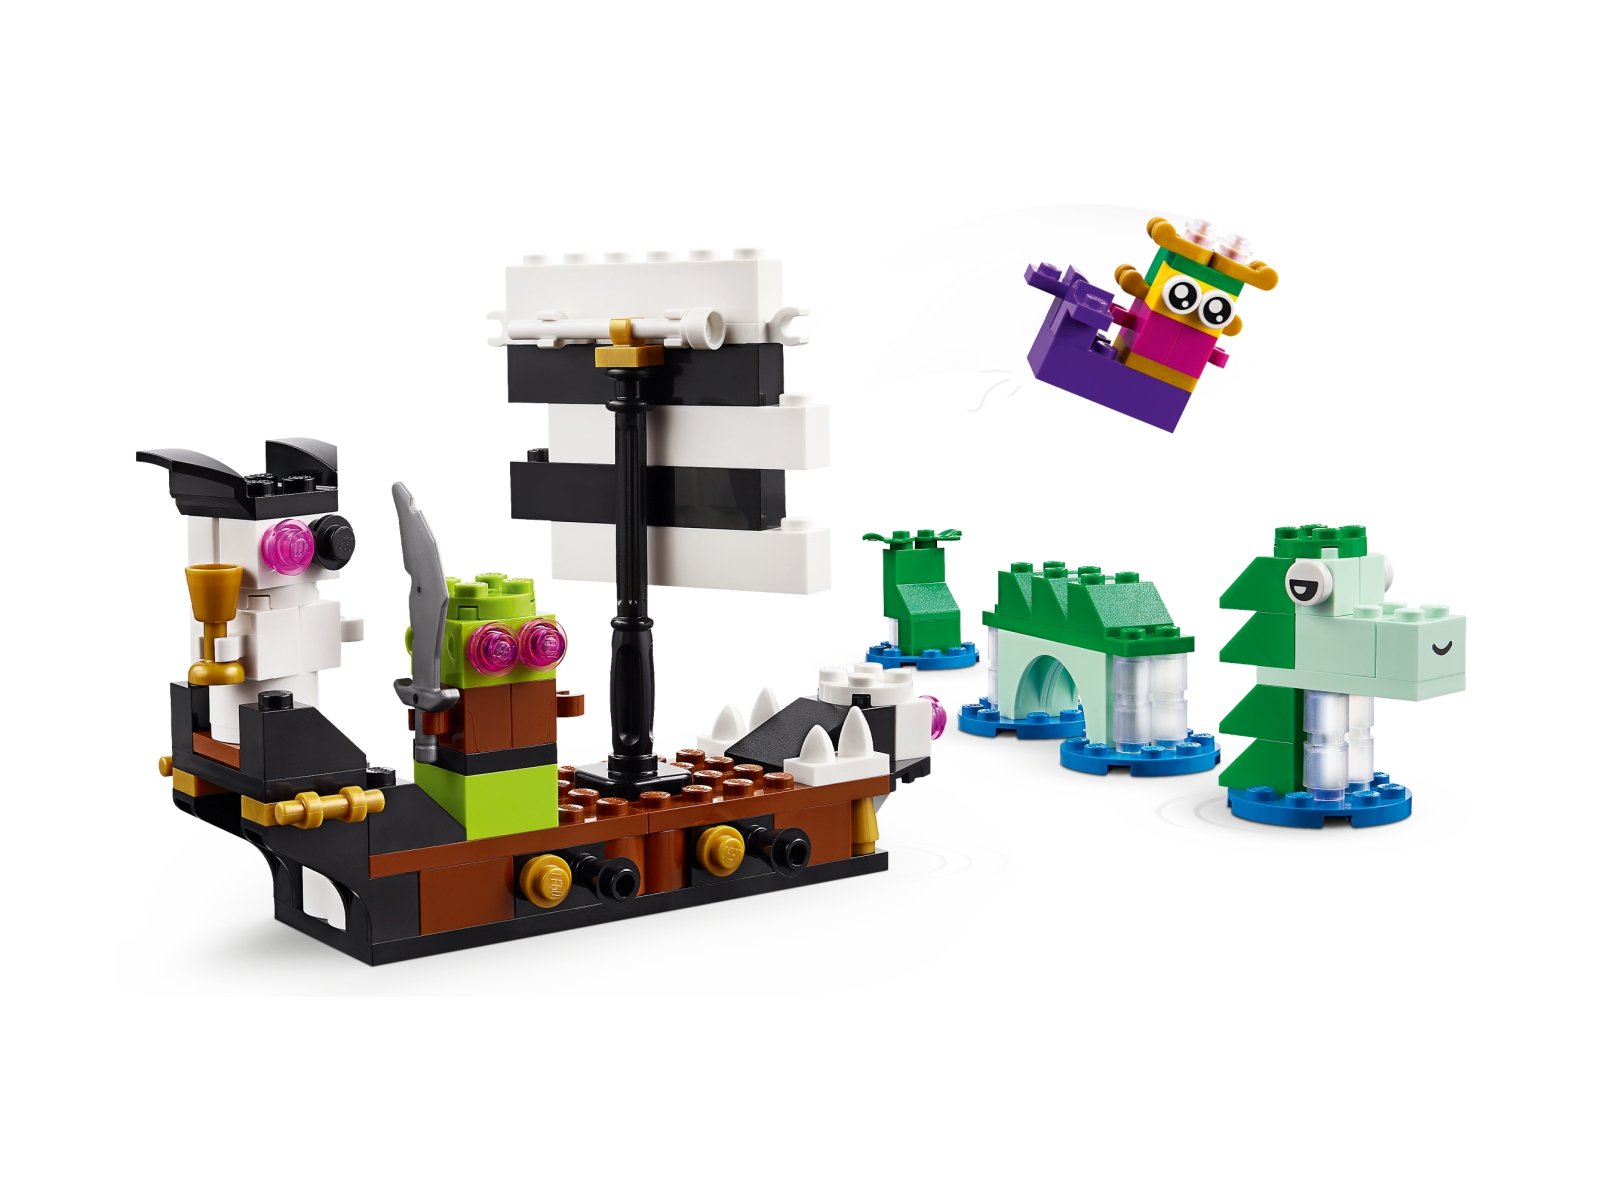 LEGO 11033 Classic Kreatywny wszechświat fantazji